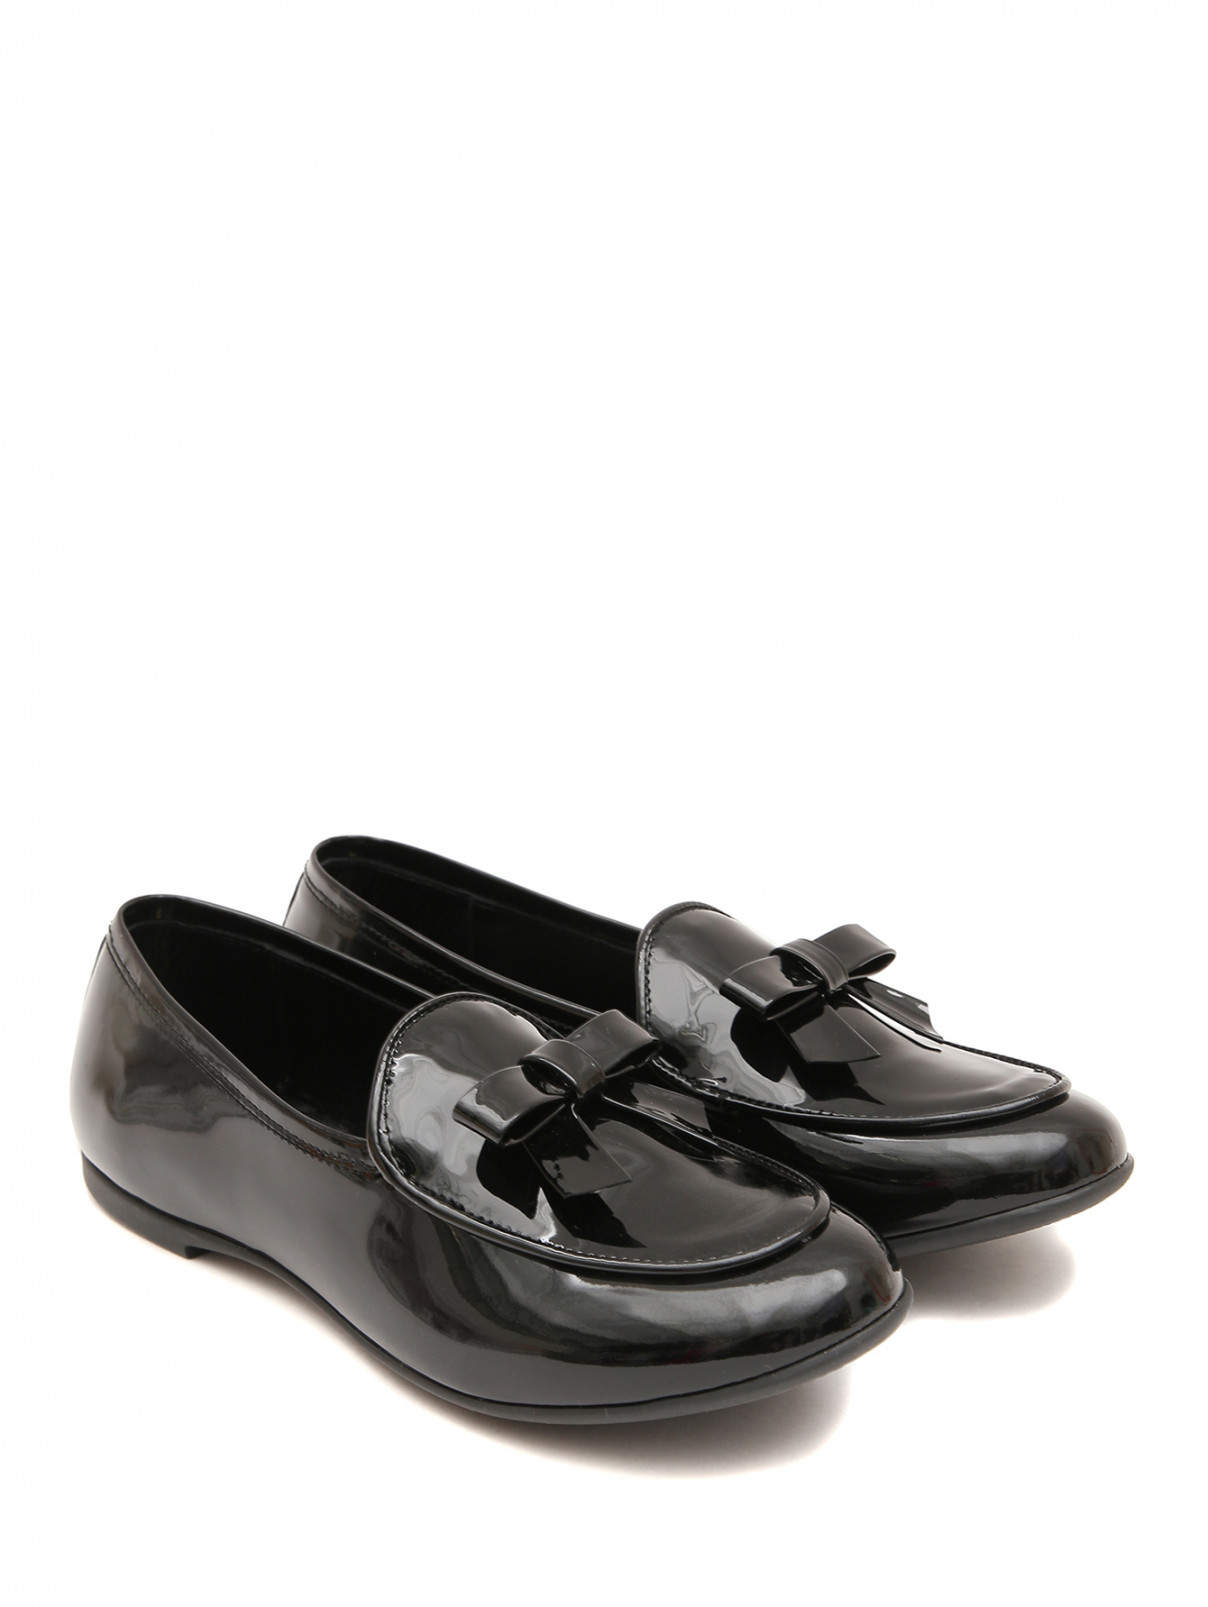 Лакированные туфли с бантиком MONTELPARE TRADITION  –  Общий вид  – Цвет:  Черный